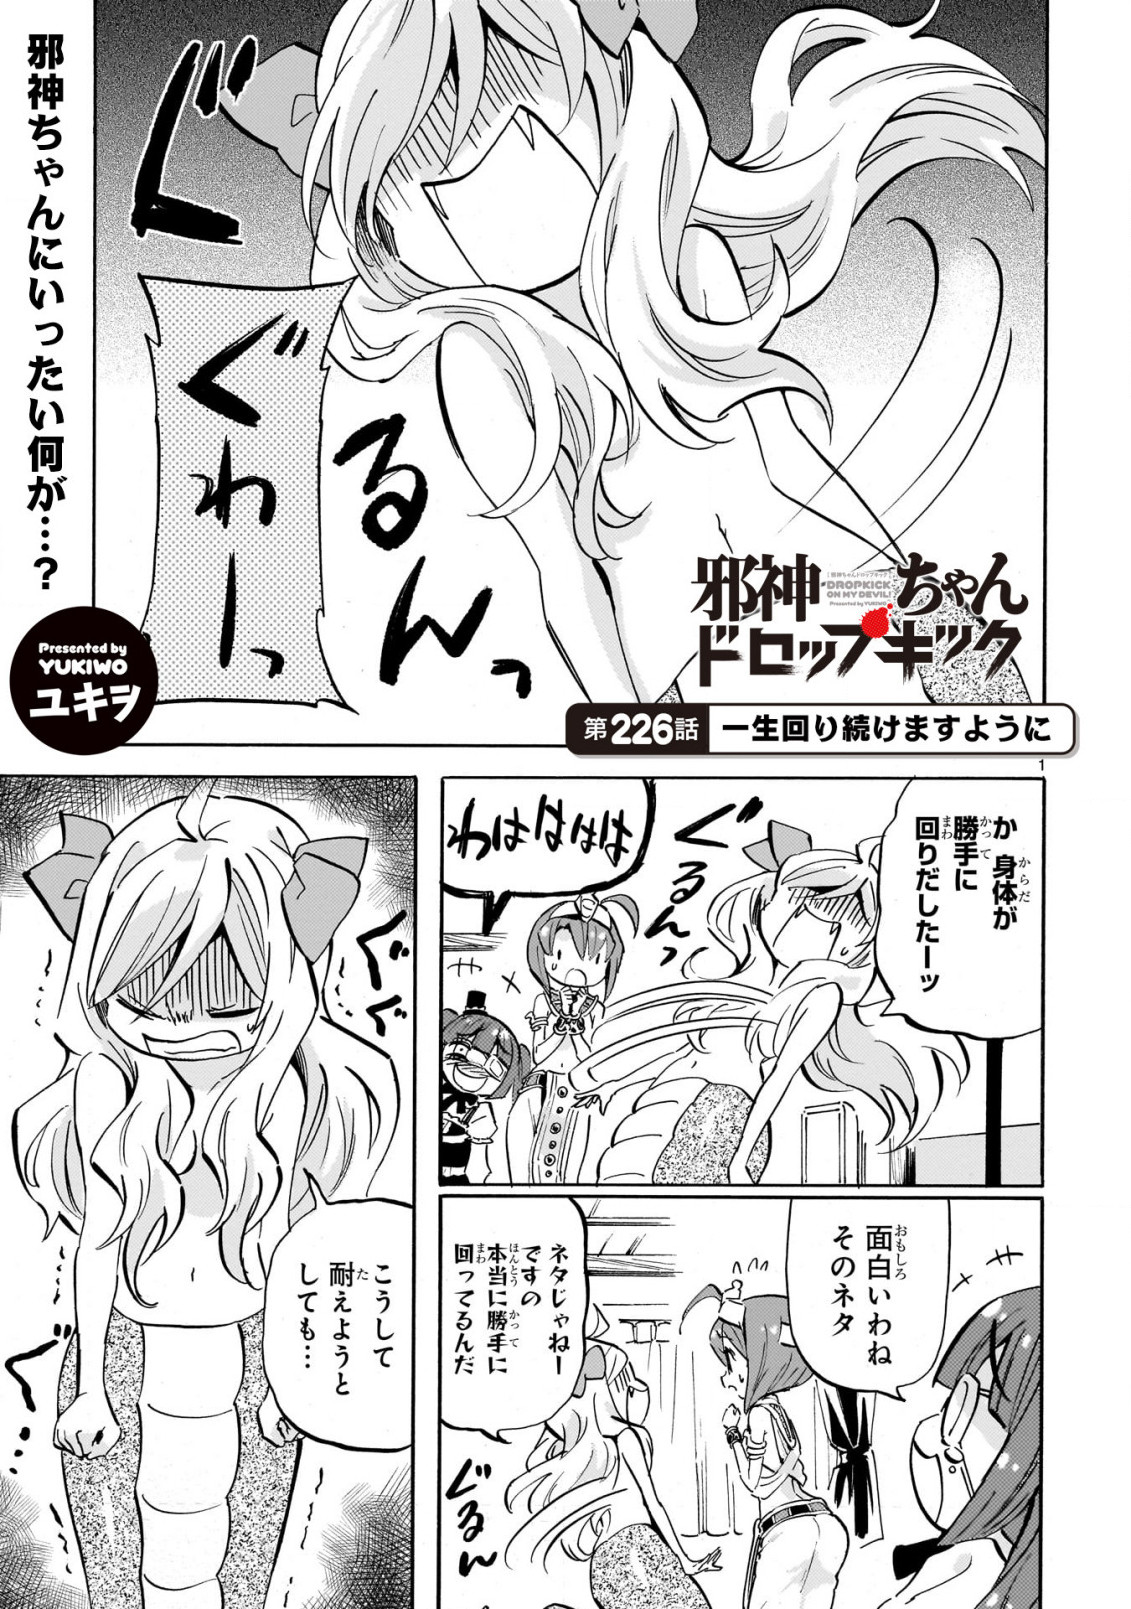 Jashin-chan Dropkick - Chapter 226 - Page 1